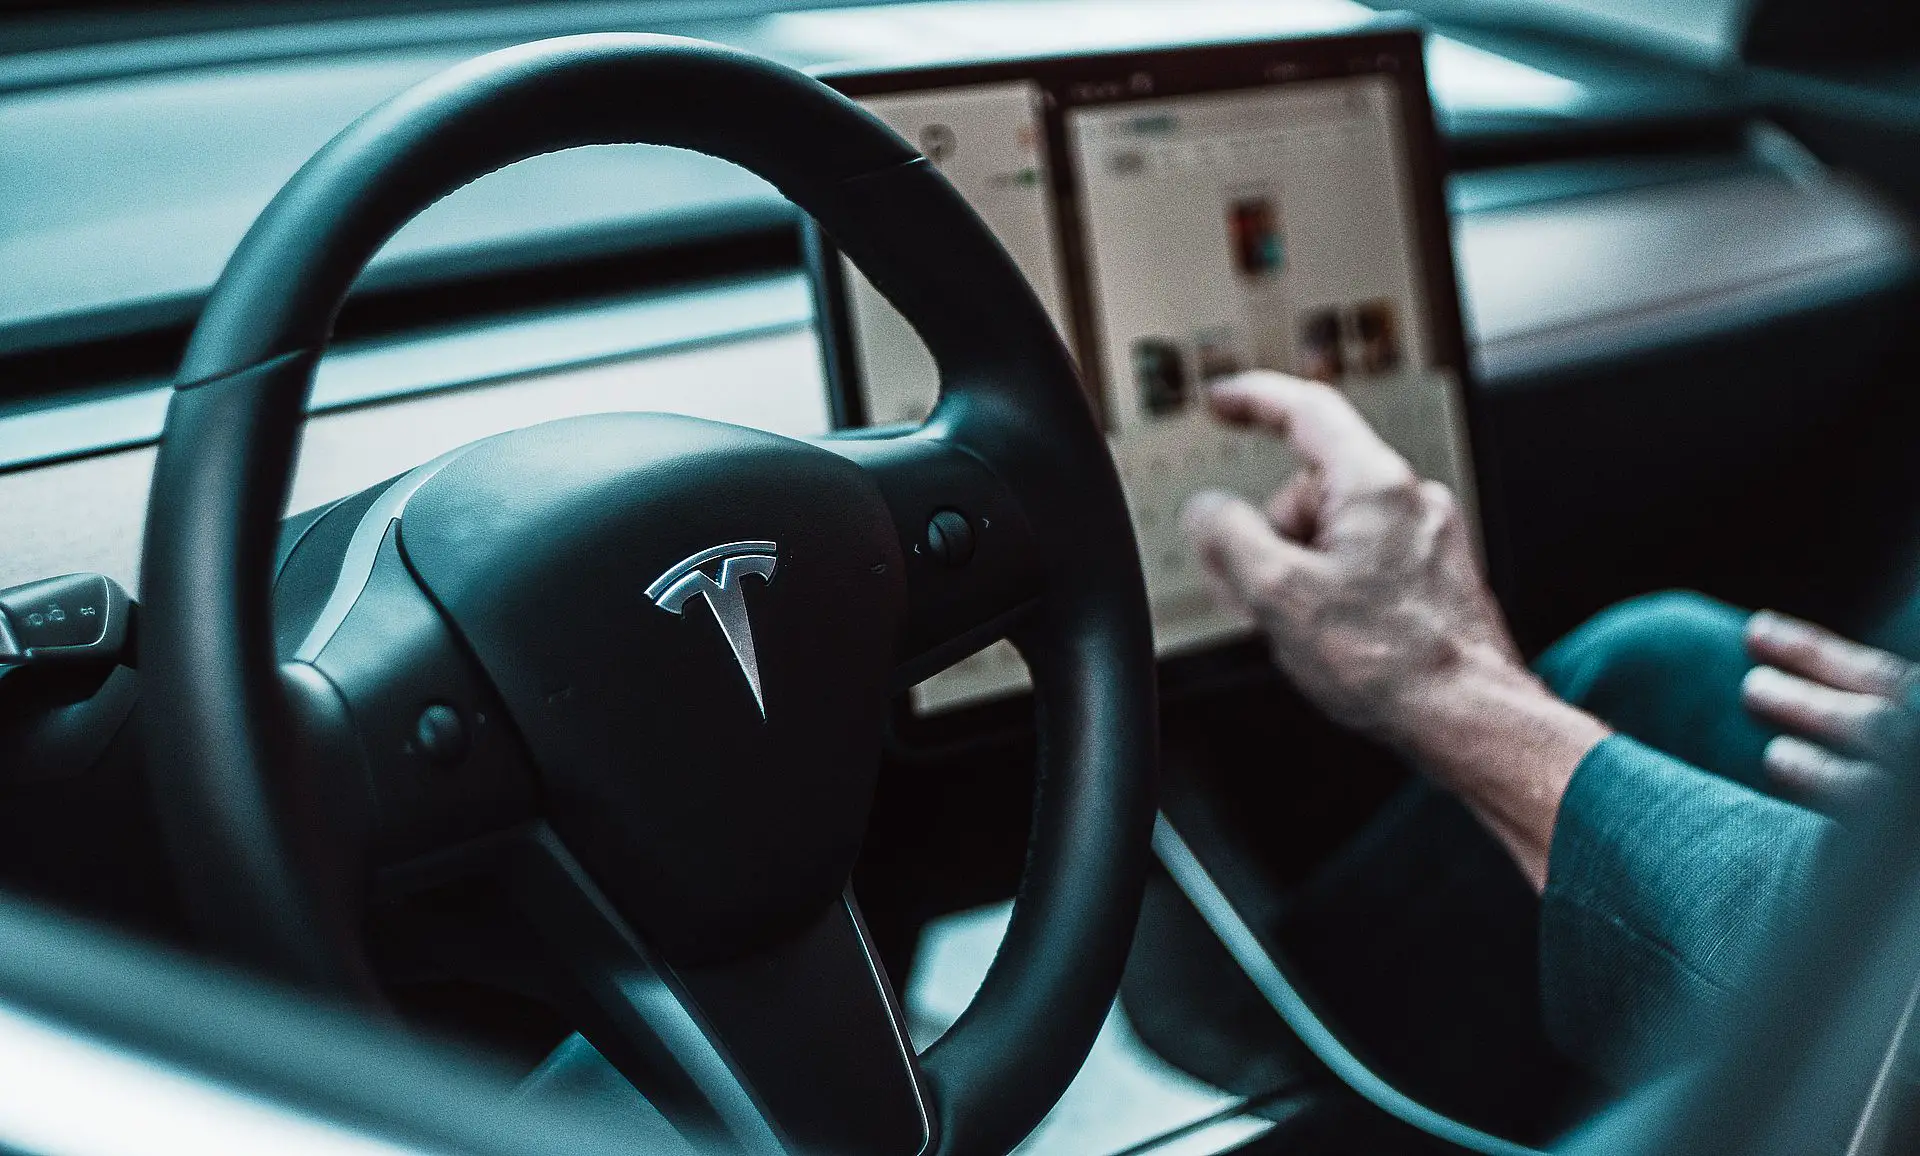 Elon Musk, Tesla veri ihlaline neden olan kişileri buldu